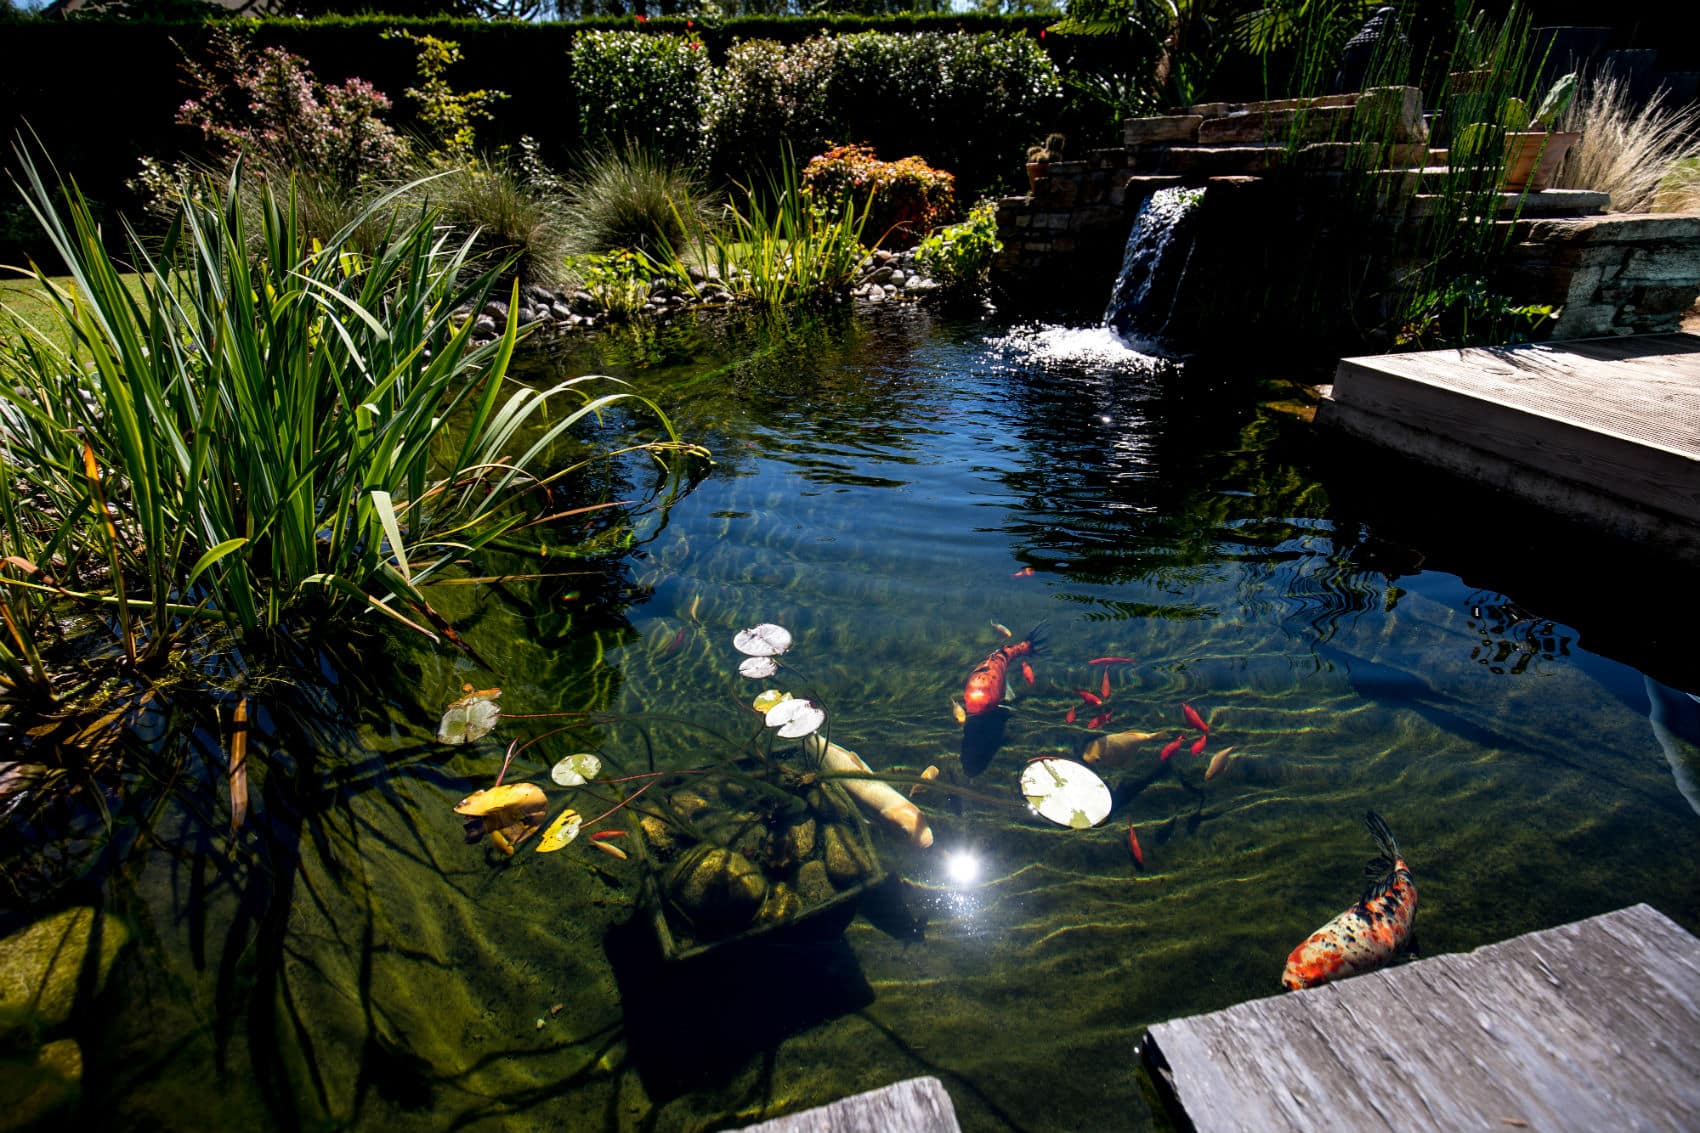 photos de bassins de jardin - Recherche Google